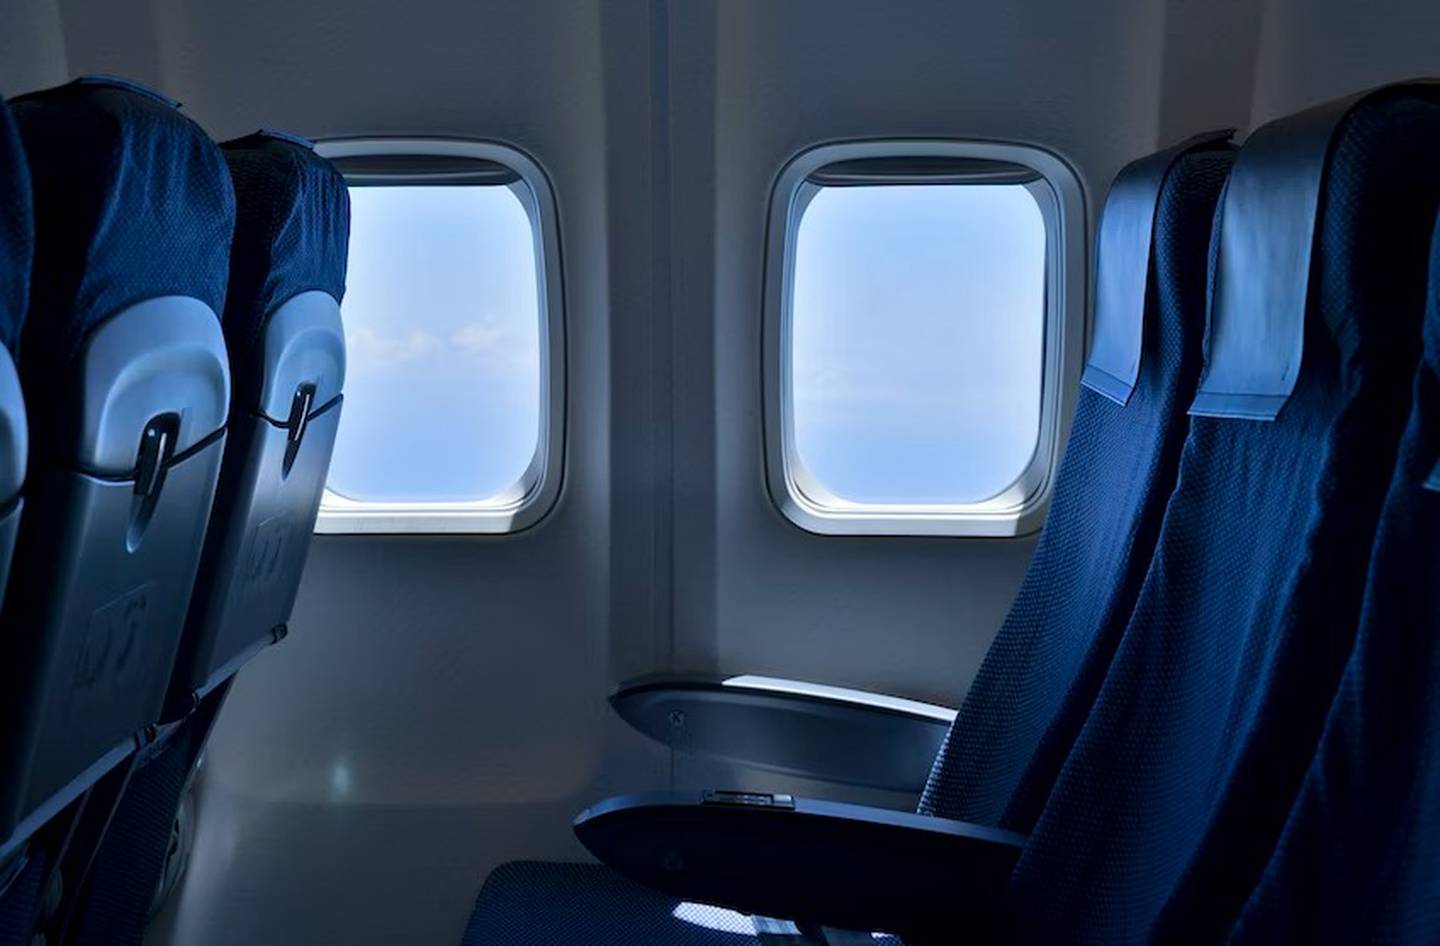 El asiento del medio es el más incómodo, sobre todo en viajes largos